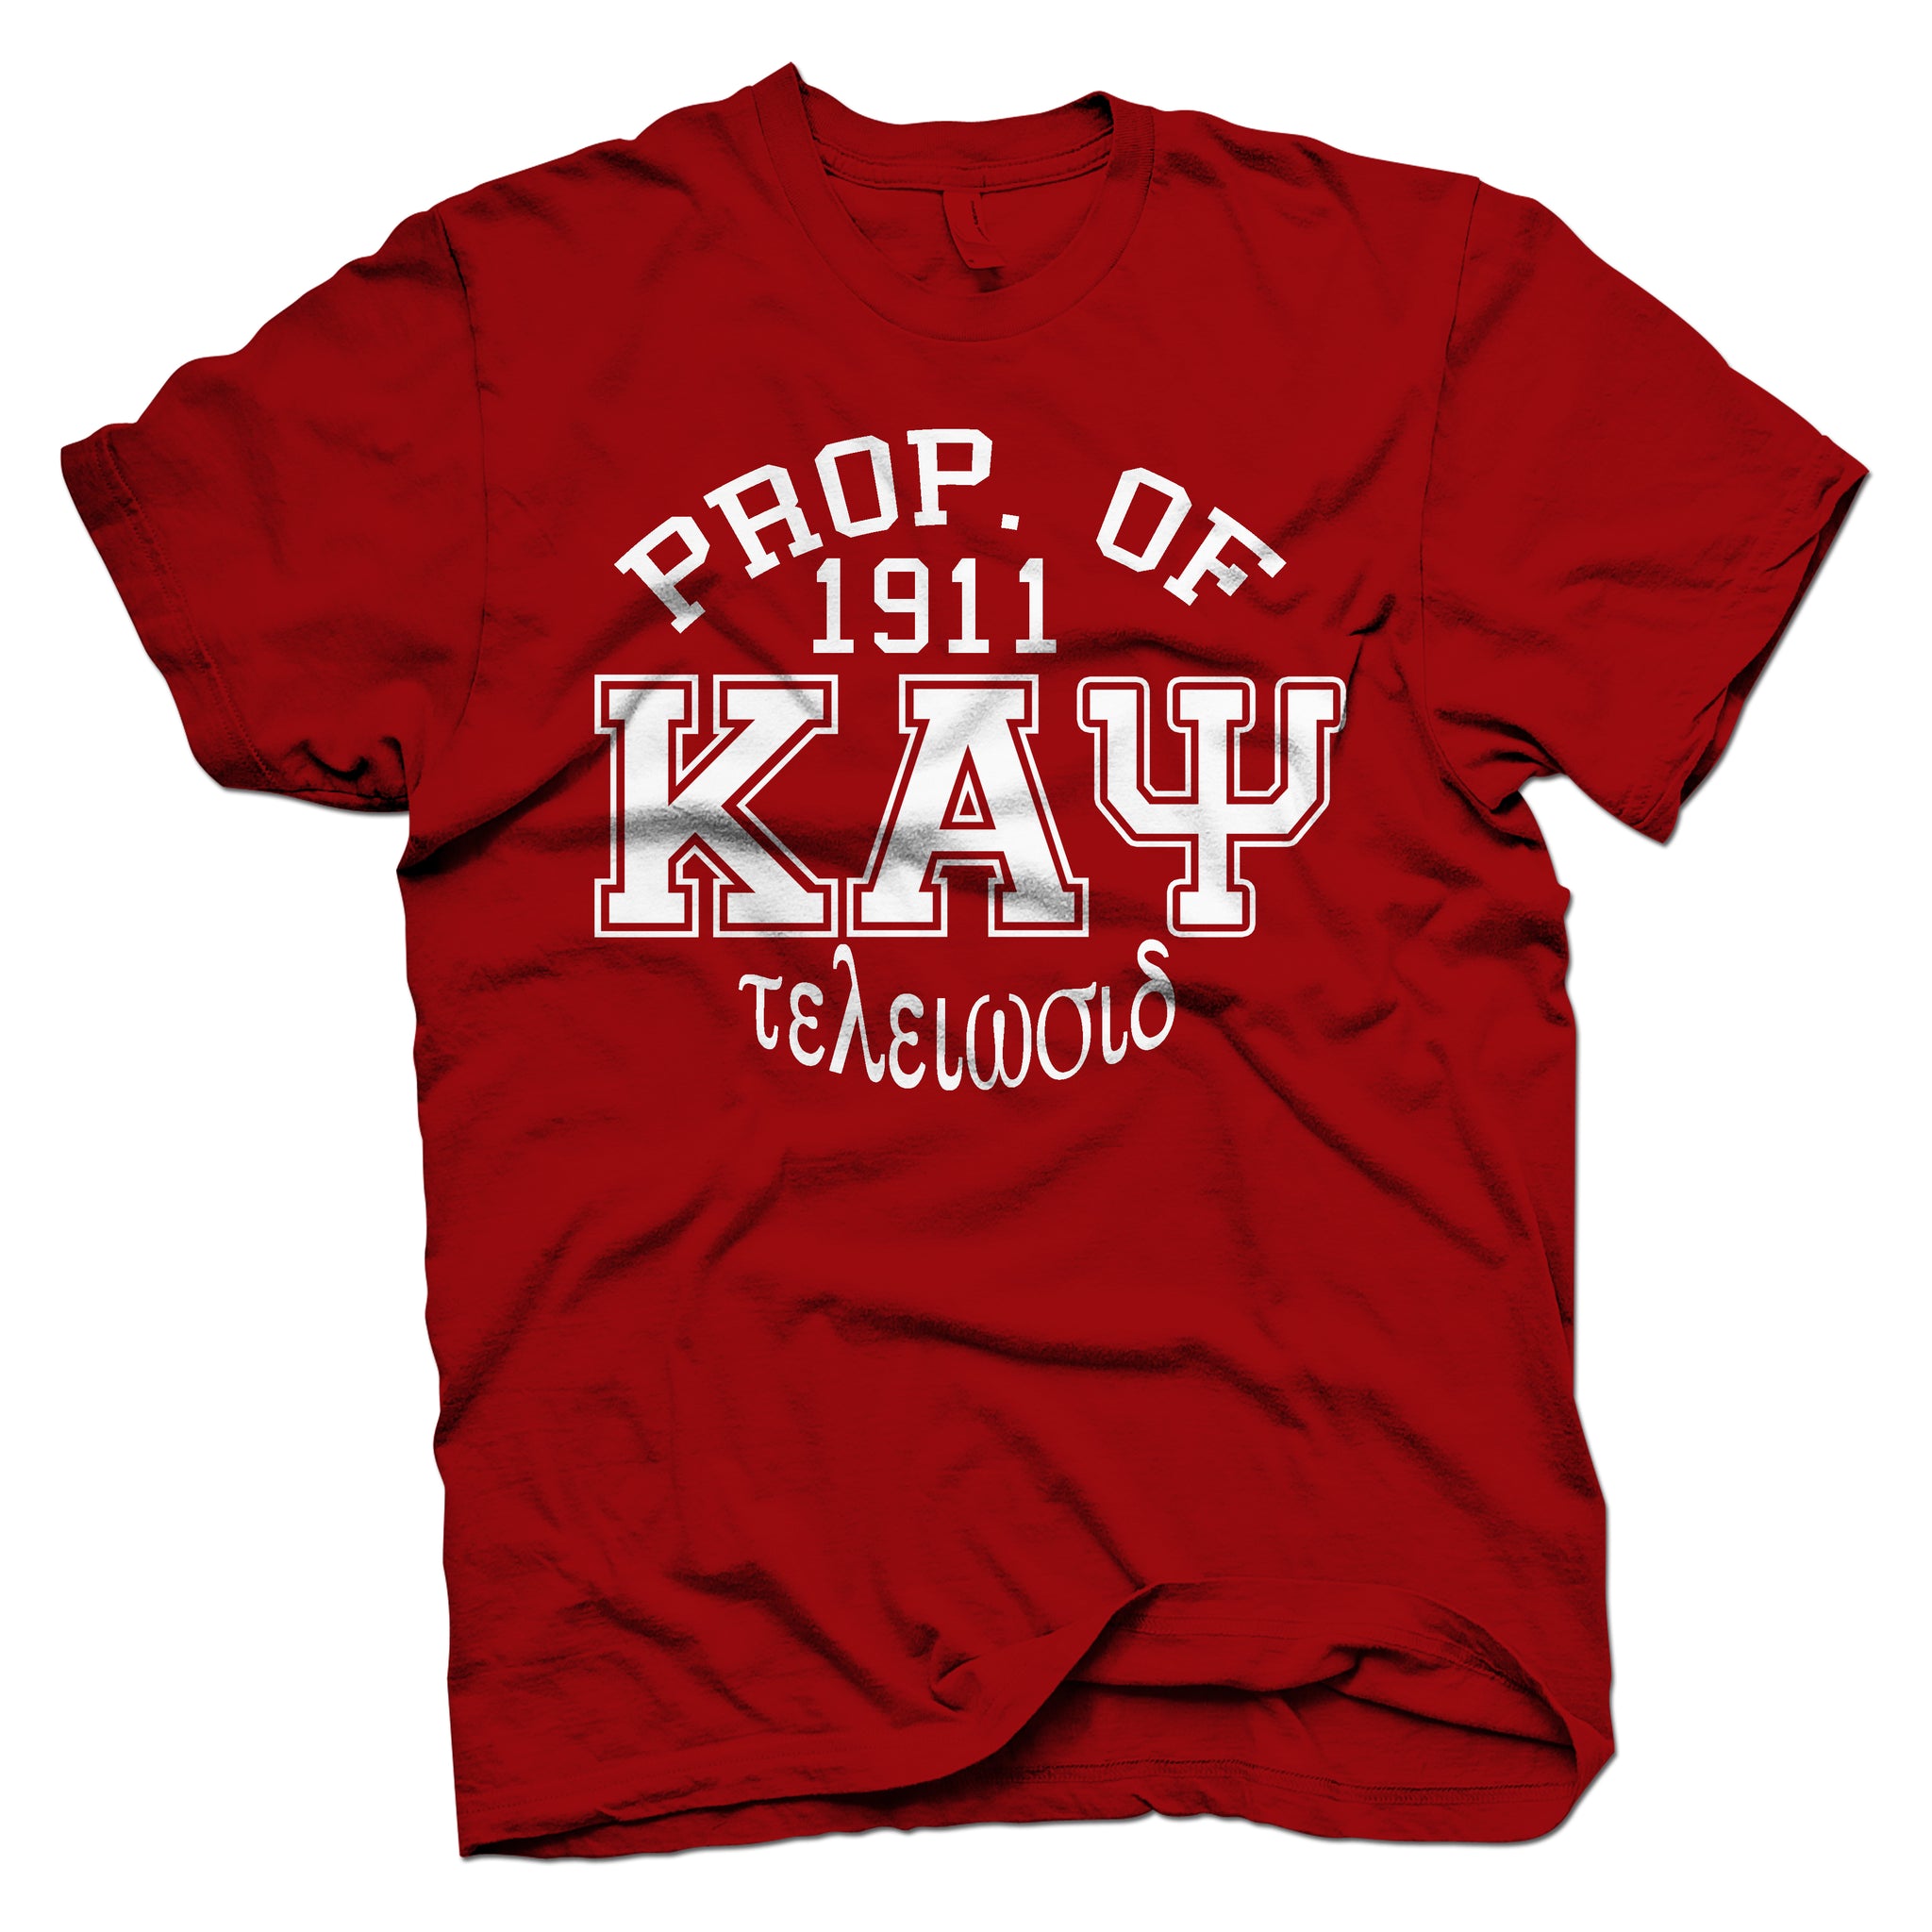 Kappa Brand Tshirt